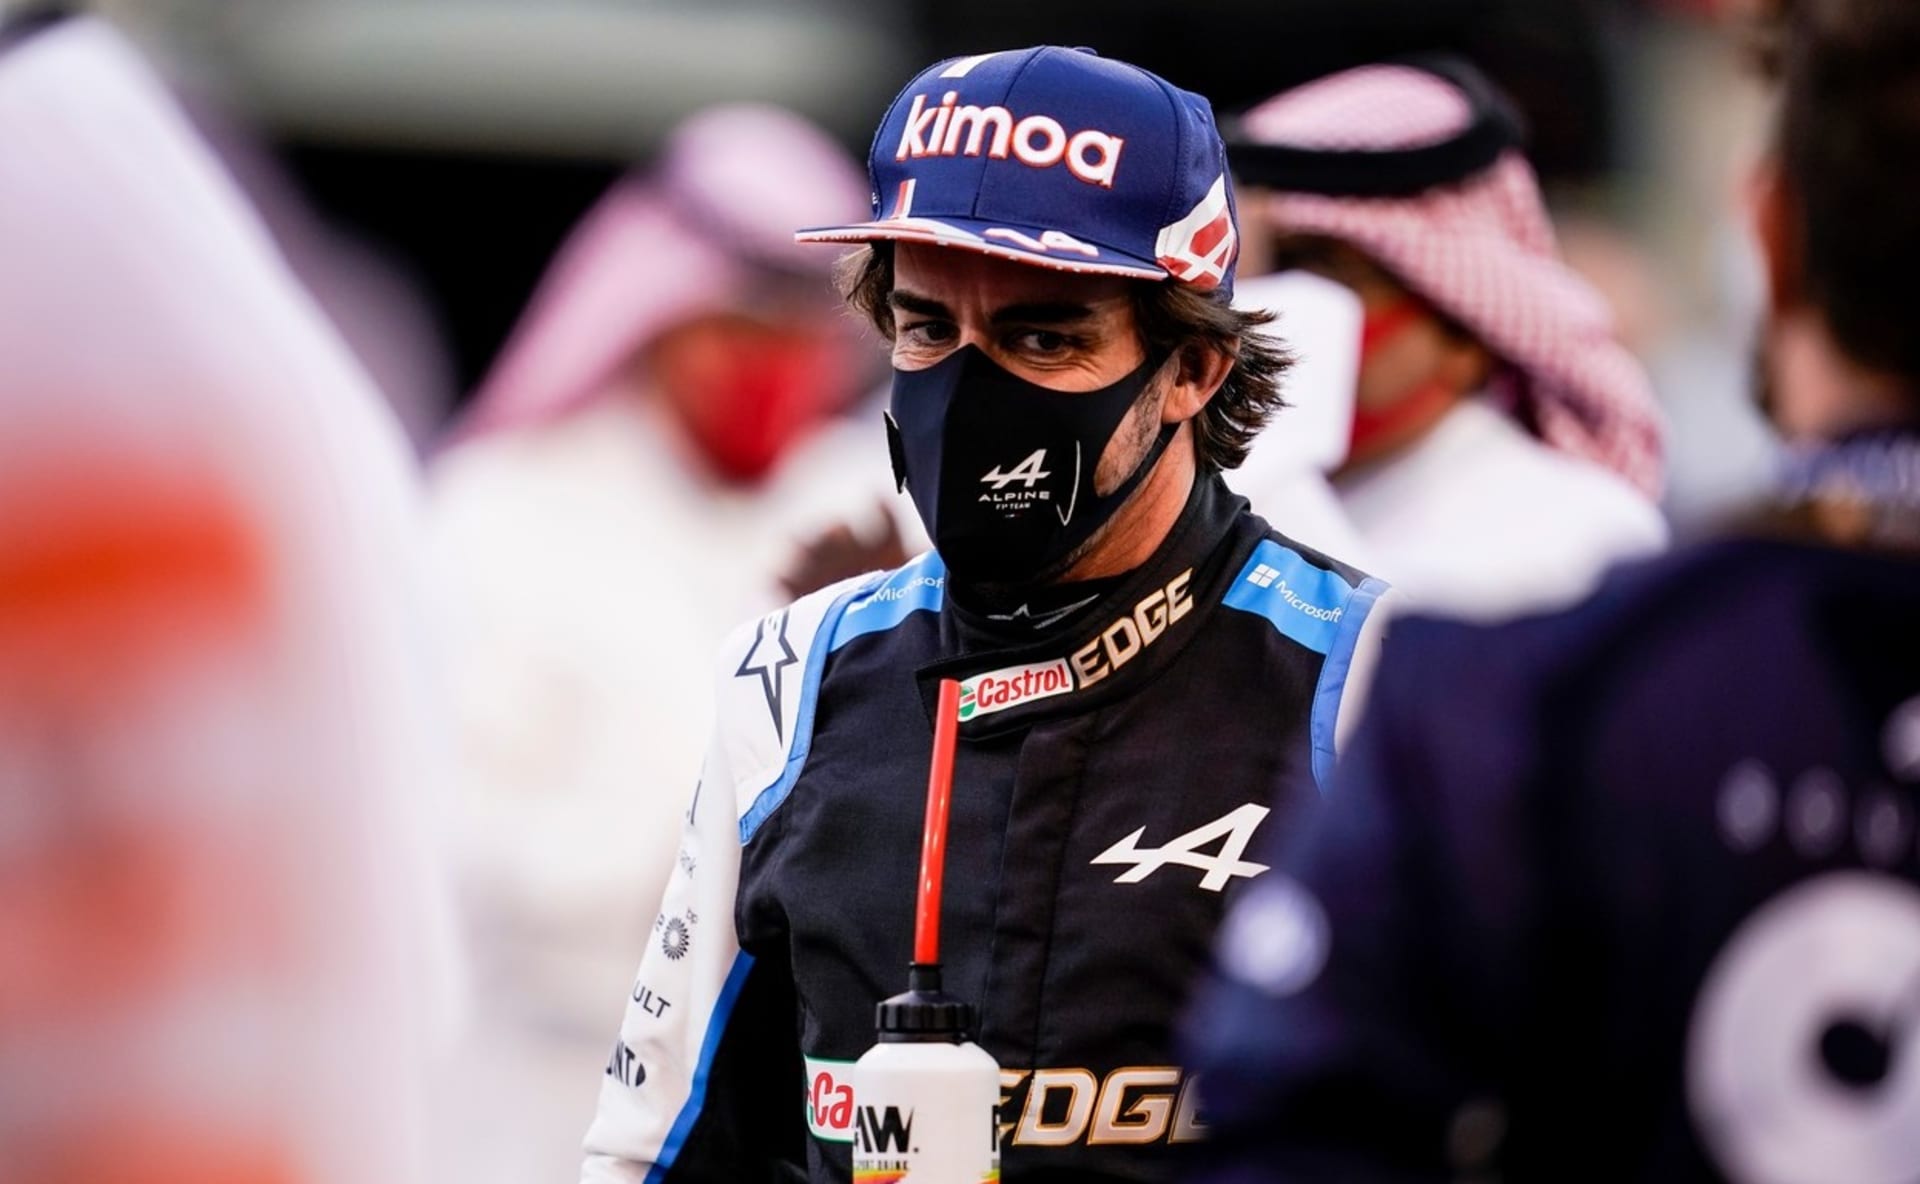 Fernandu Alonsovi návrat do formule 1 zhořkl. Ze závodu v Bahrajnu ho předčasně vyřadil obal od sendviče, který způsobil přehřívání brzd.